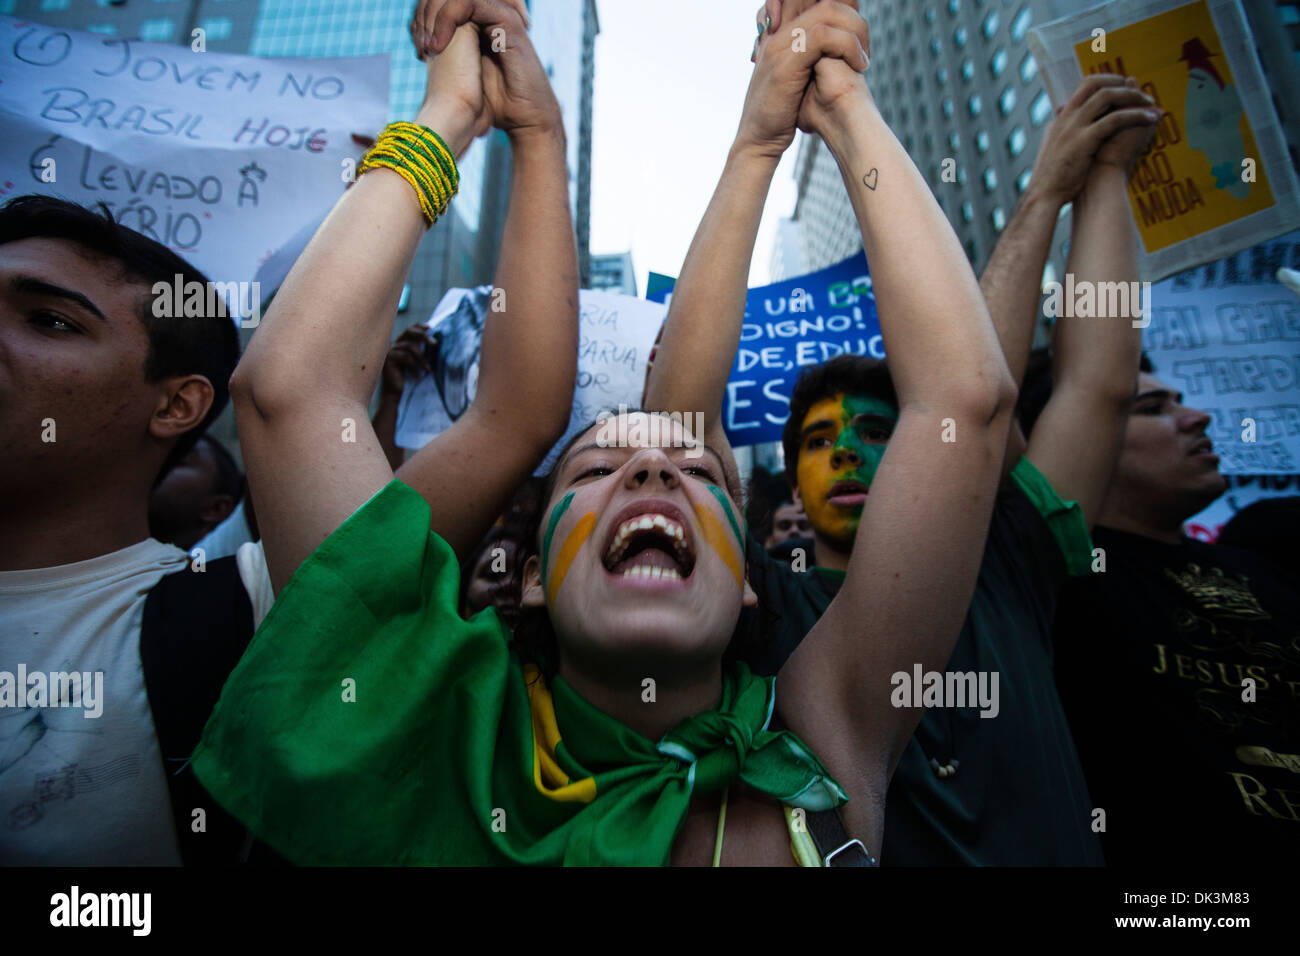 Las protestas de 2013 en Brasil, en el centro de Río de Janeiro, 20 de junio de 2013 jóvenes gritar palabras contra el activismo del gobierno brasileño Foto de stock